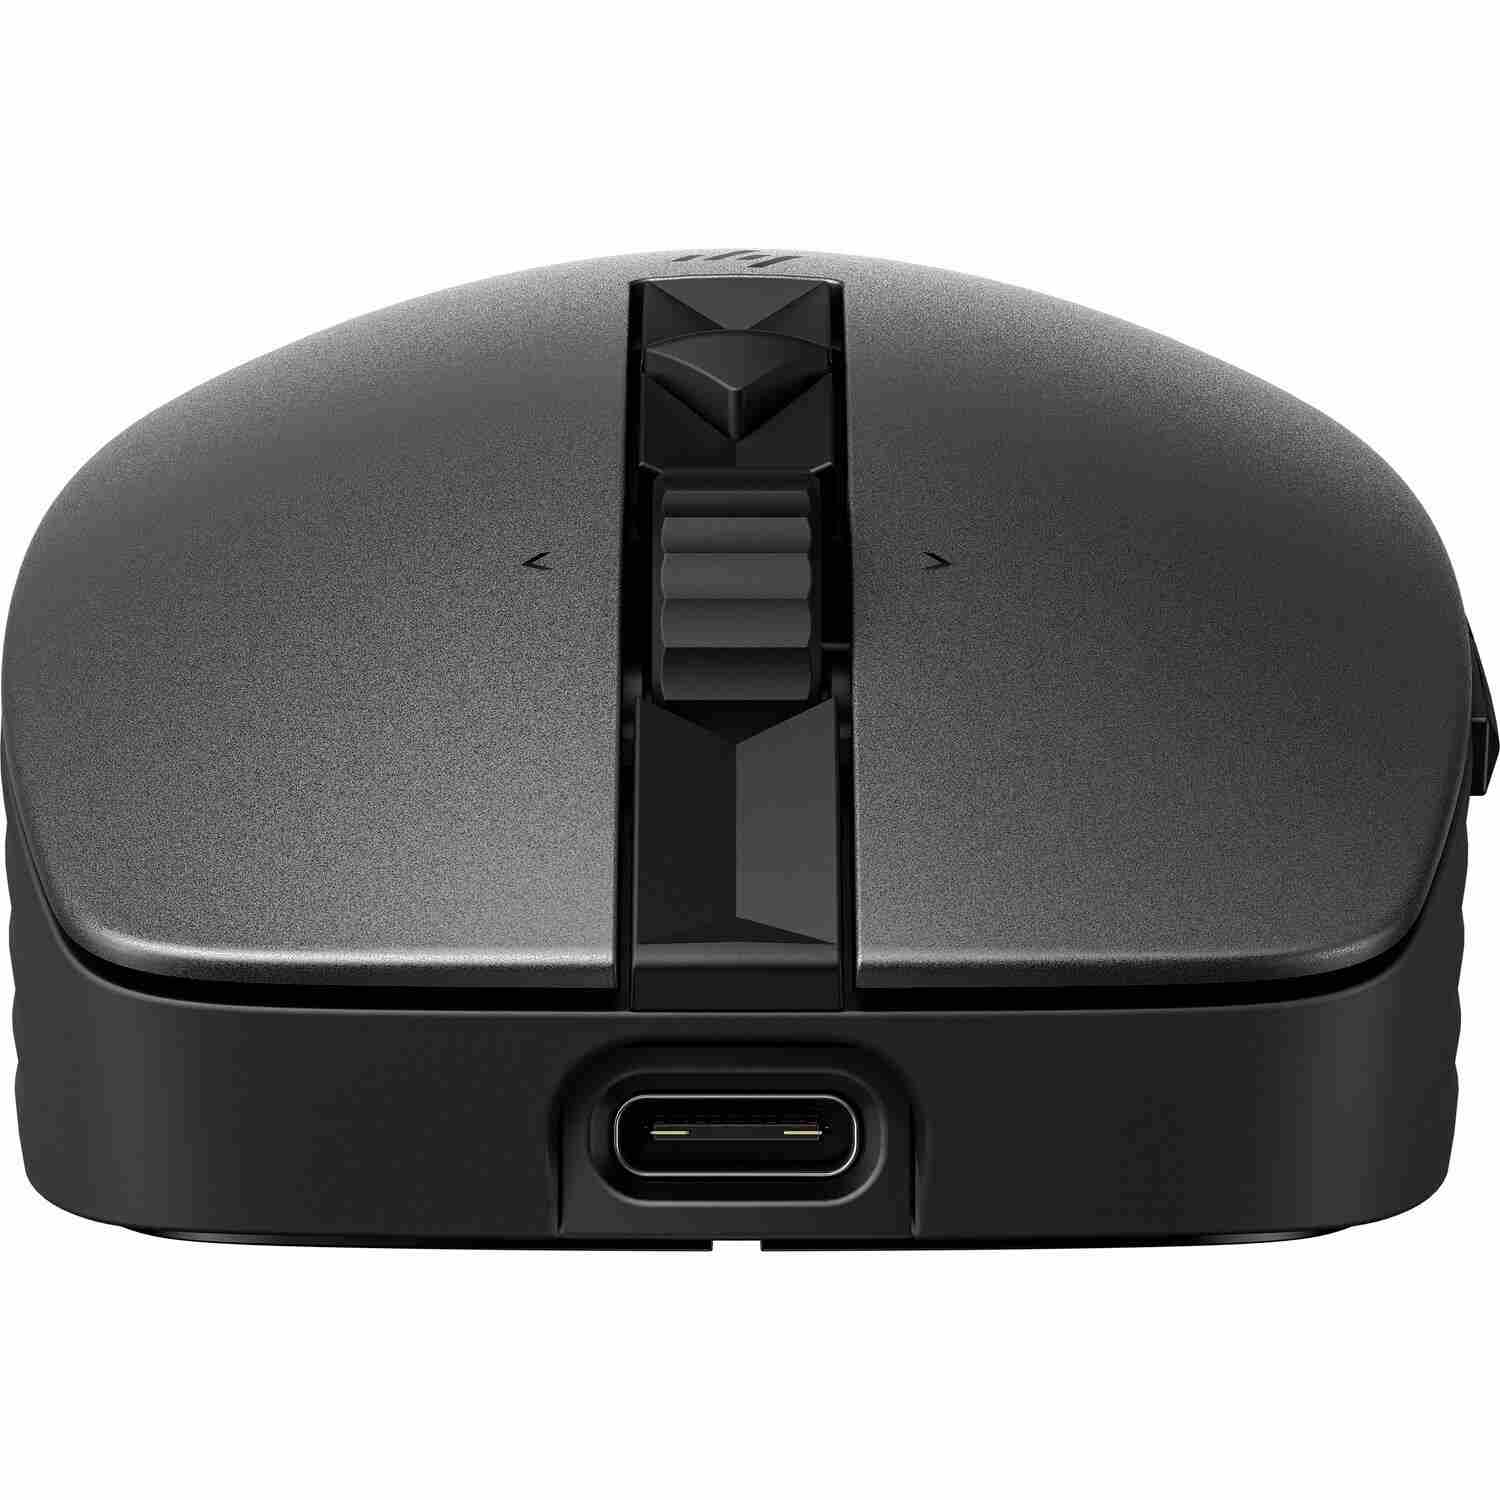 HP 710 Rechargeable Silent Mouse - bezdrátová bluetooth myš1 